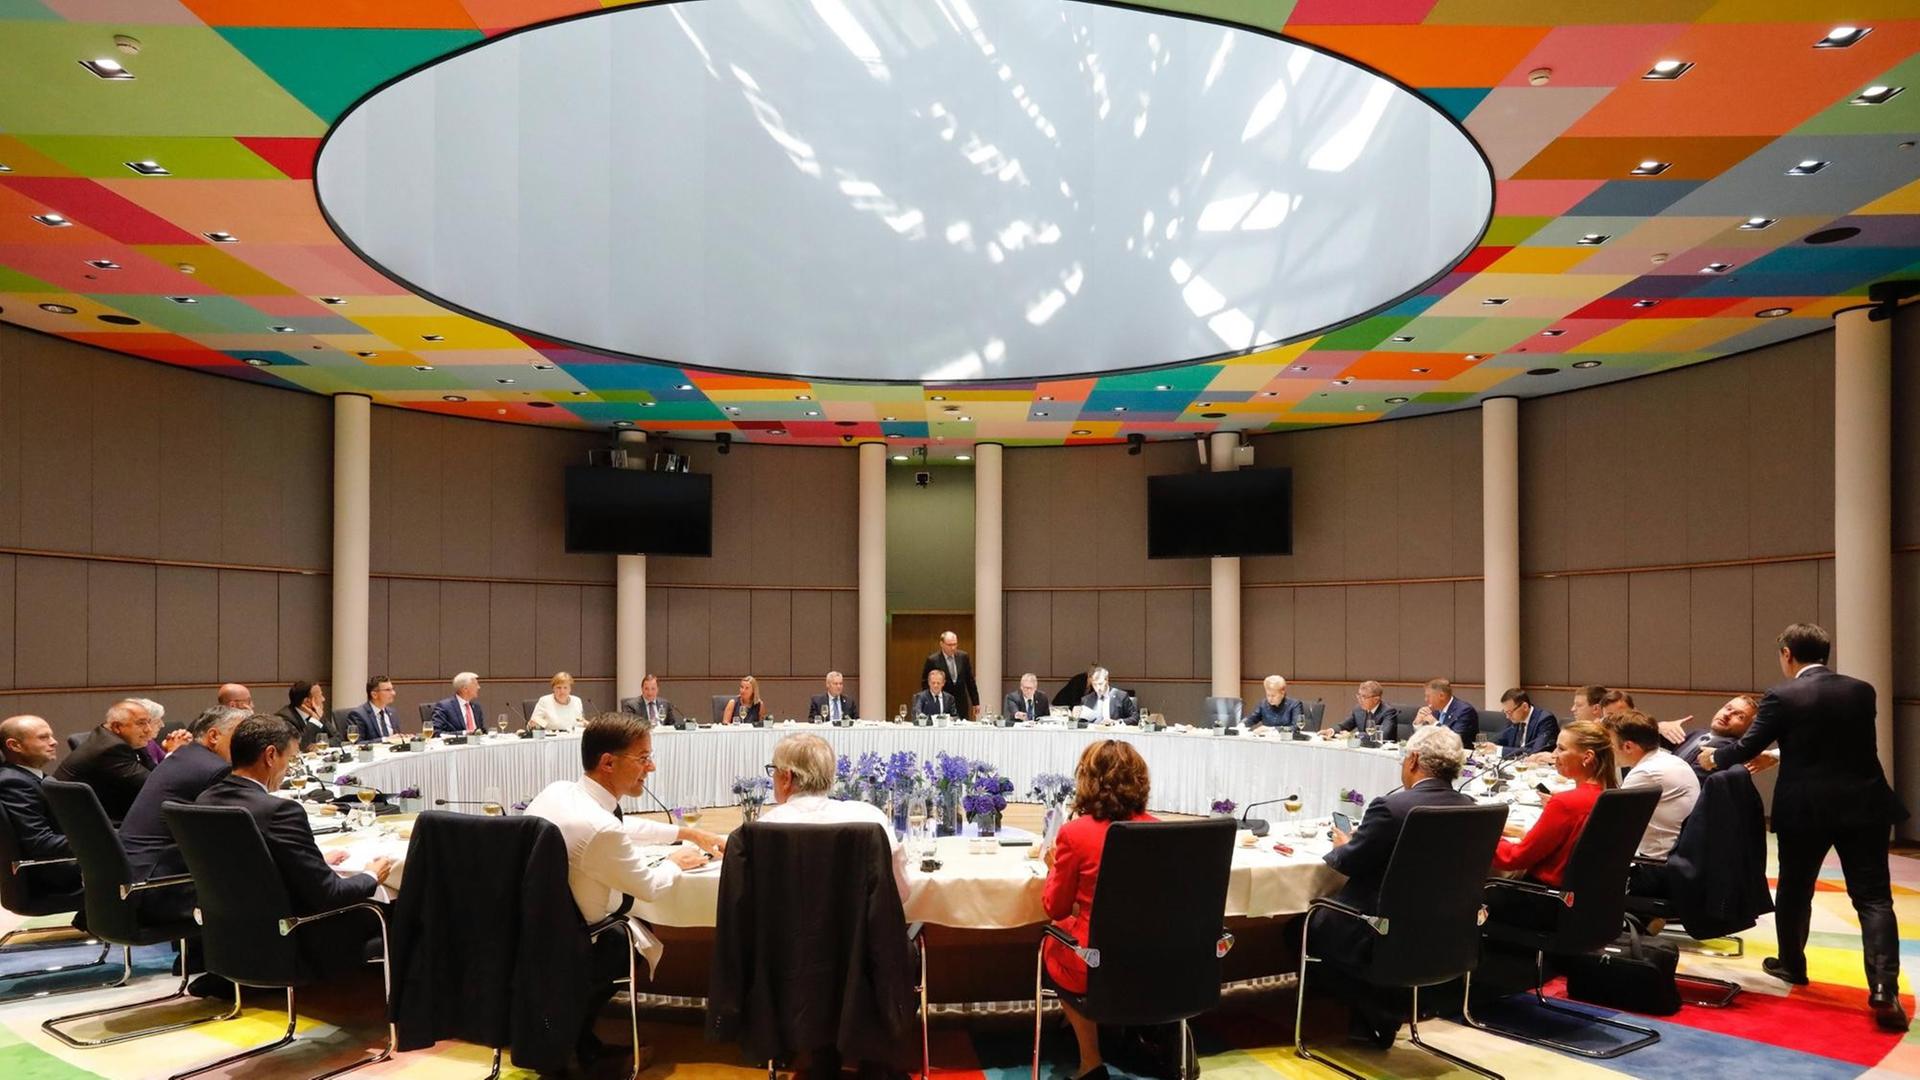 Beim Treffen des EU-Ministerrats sitzen die Vertreter der Mitgliedstaaten an zu einem großen Kreis arrangierten Tischen.